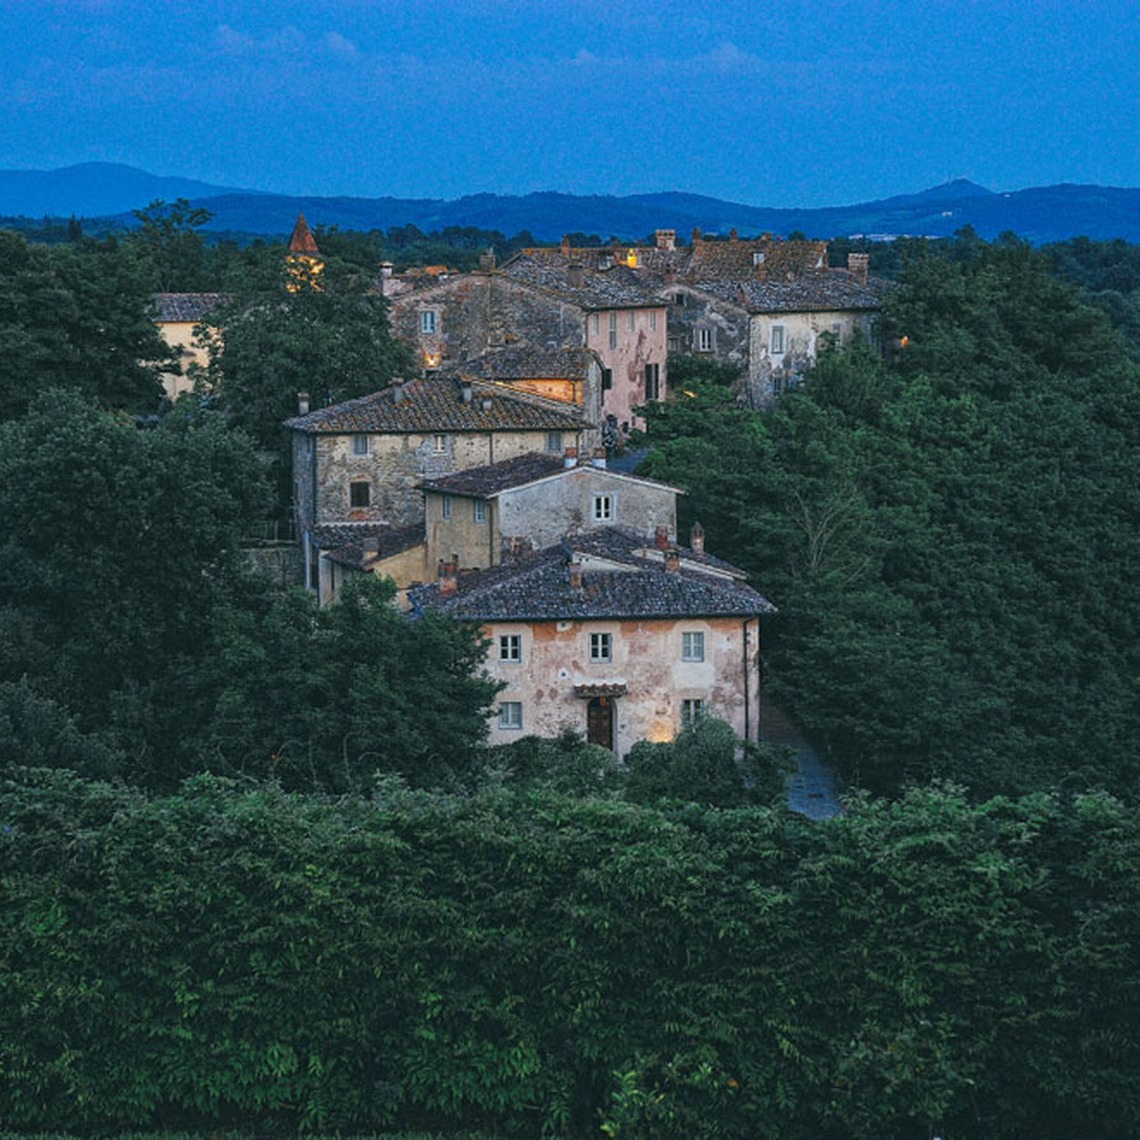 Fotografia, Borro, Ferragamo, Servizio fotografico, fotografo, Arezzo, Firenze, Toscana